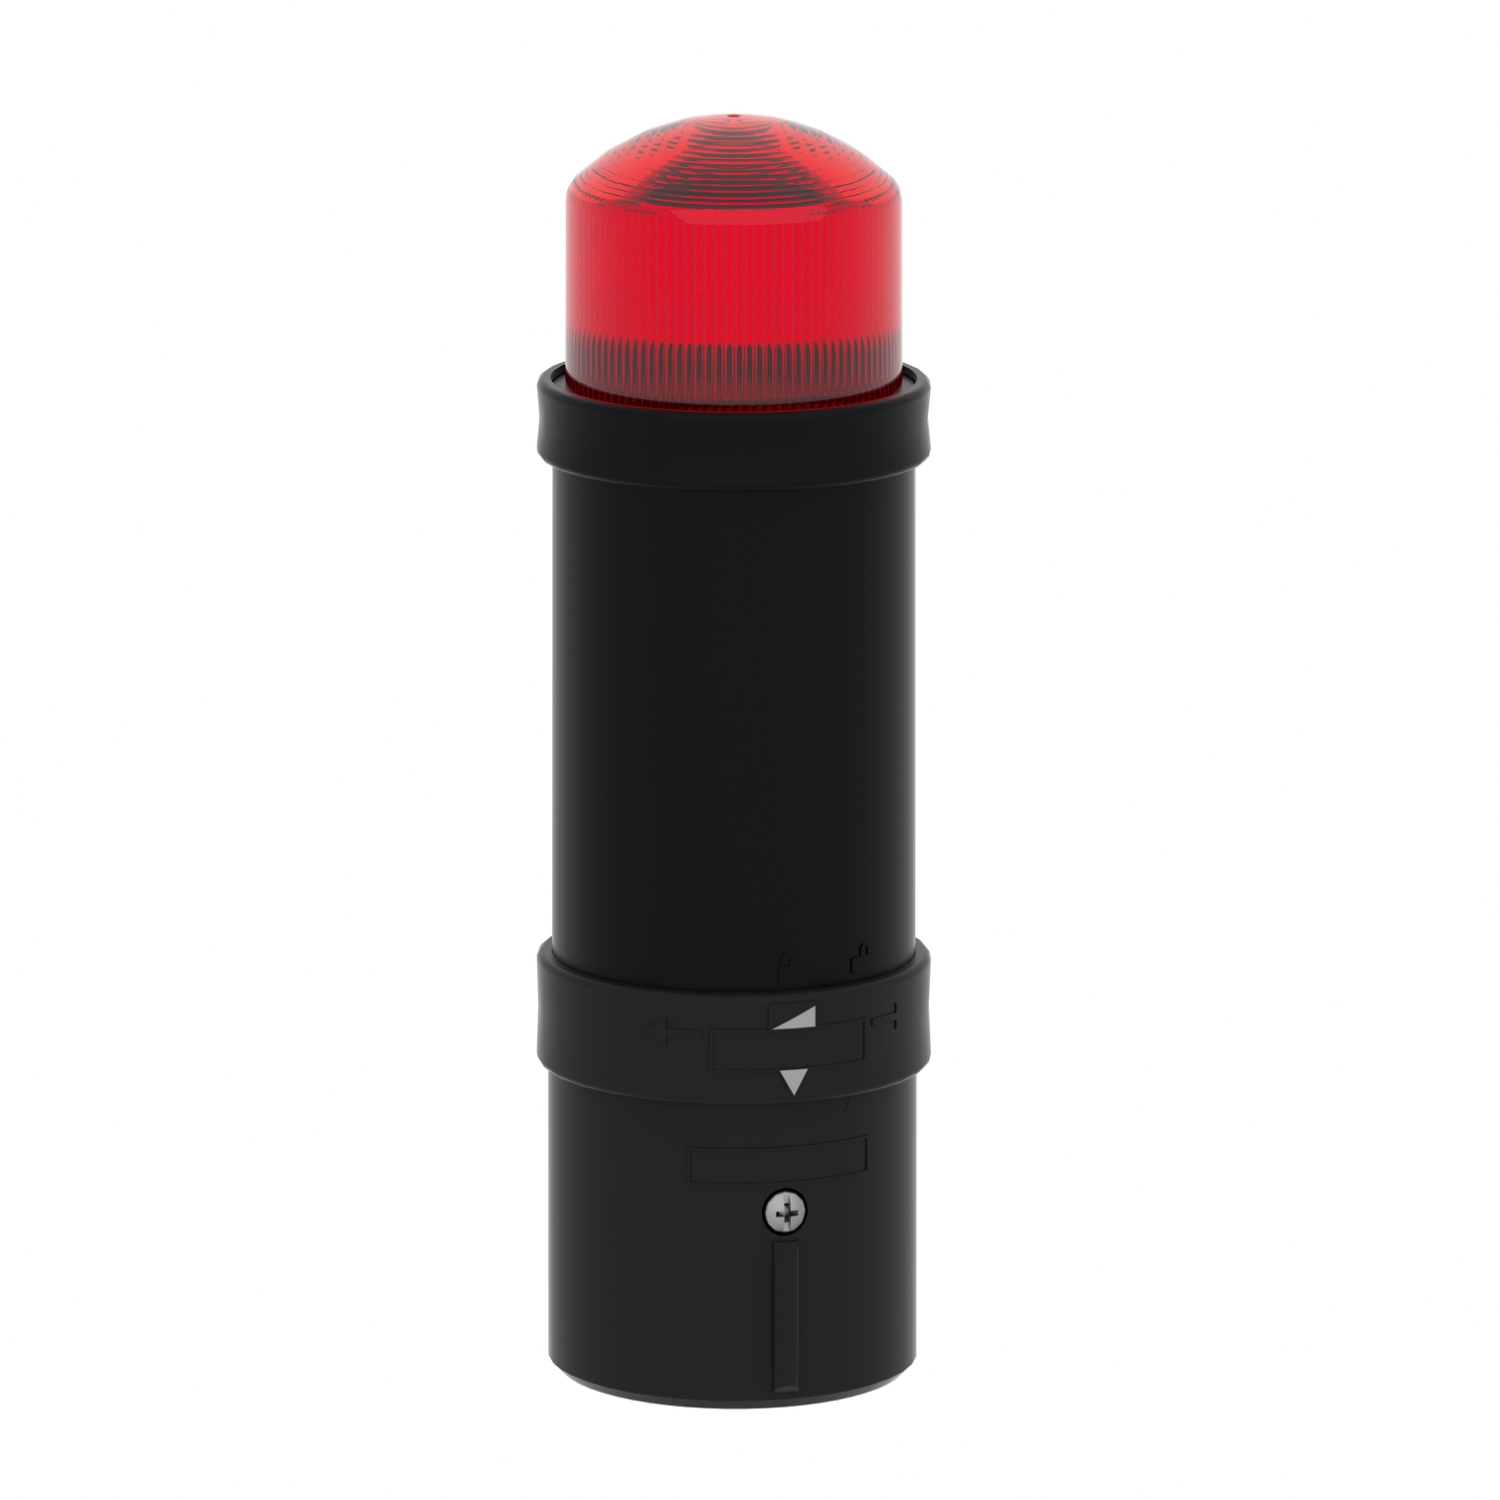 XVBL8B4 - Illuminated beacon, Harmony XVB, plastic, red, 70mm